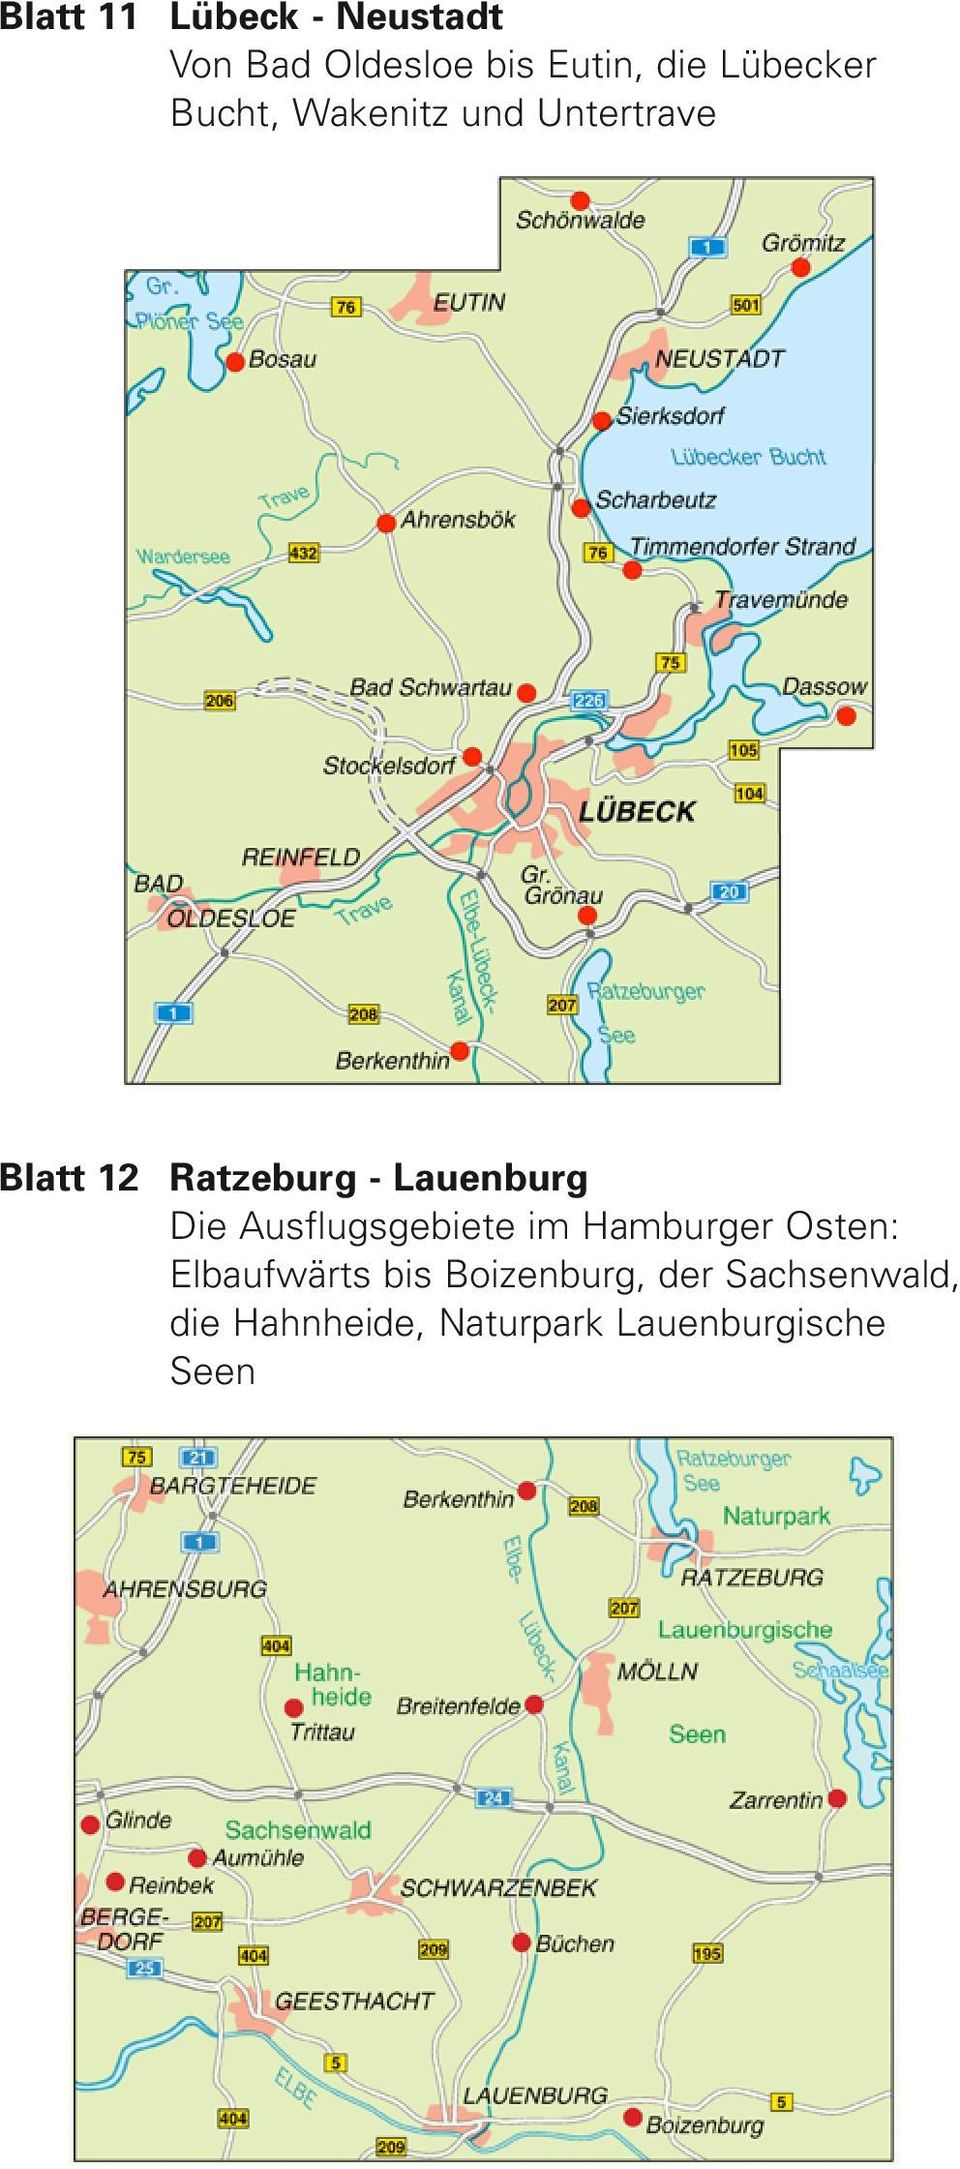 Lauenburg Die Ausflugsgebiete im Hamburger Osten: Elbaufwärts